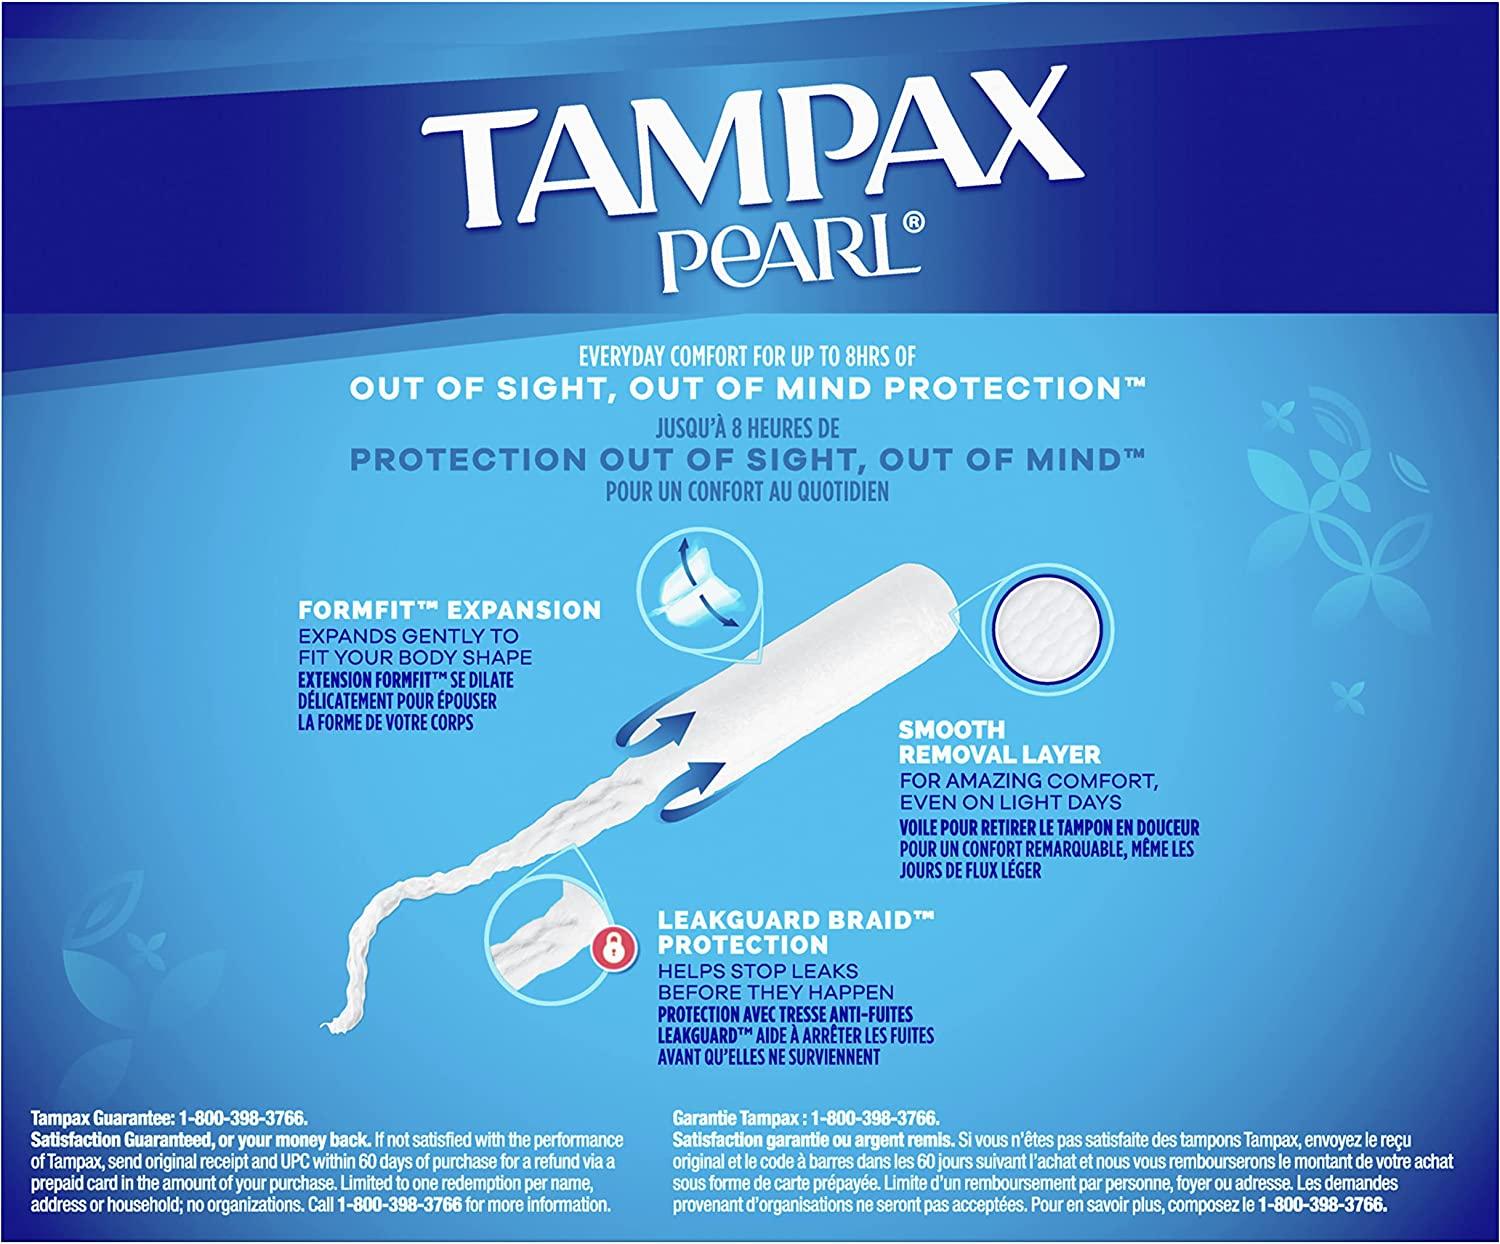  Tampax Pearl Tampons